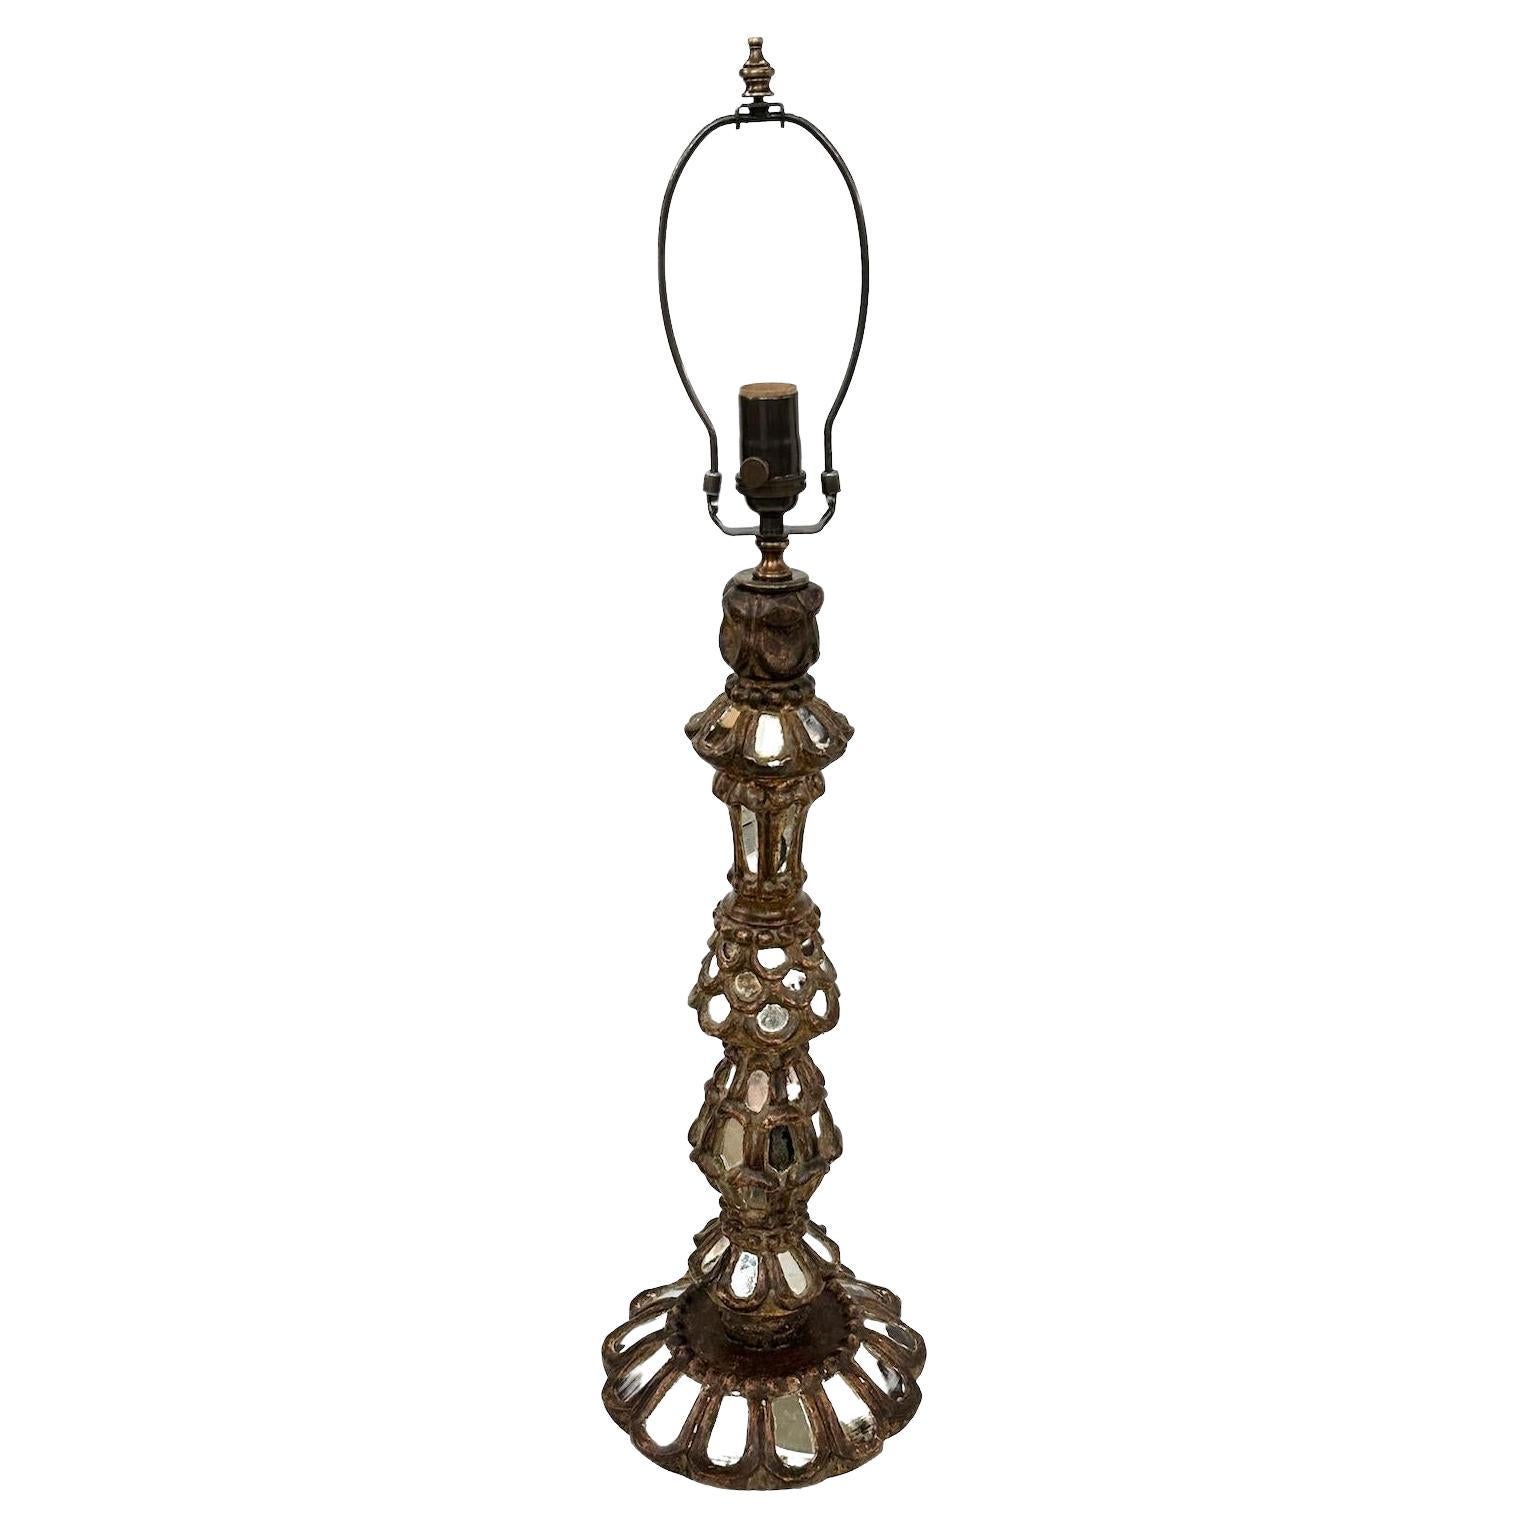 Antique Candlesitck Lamp